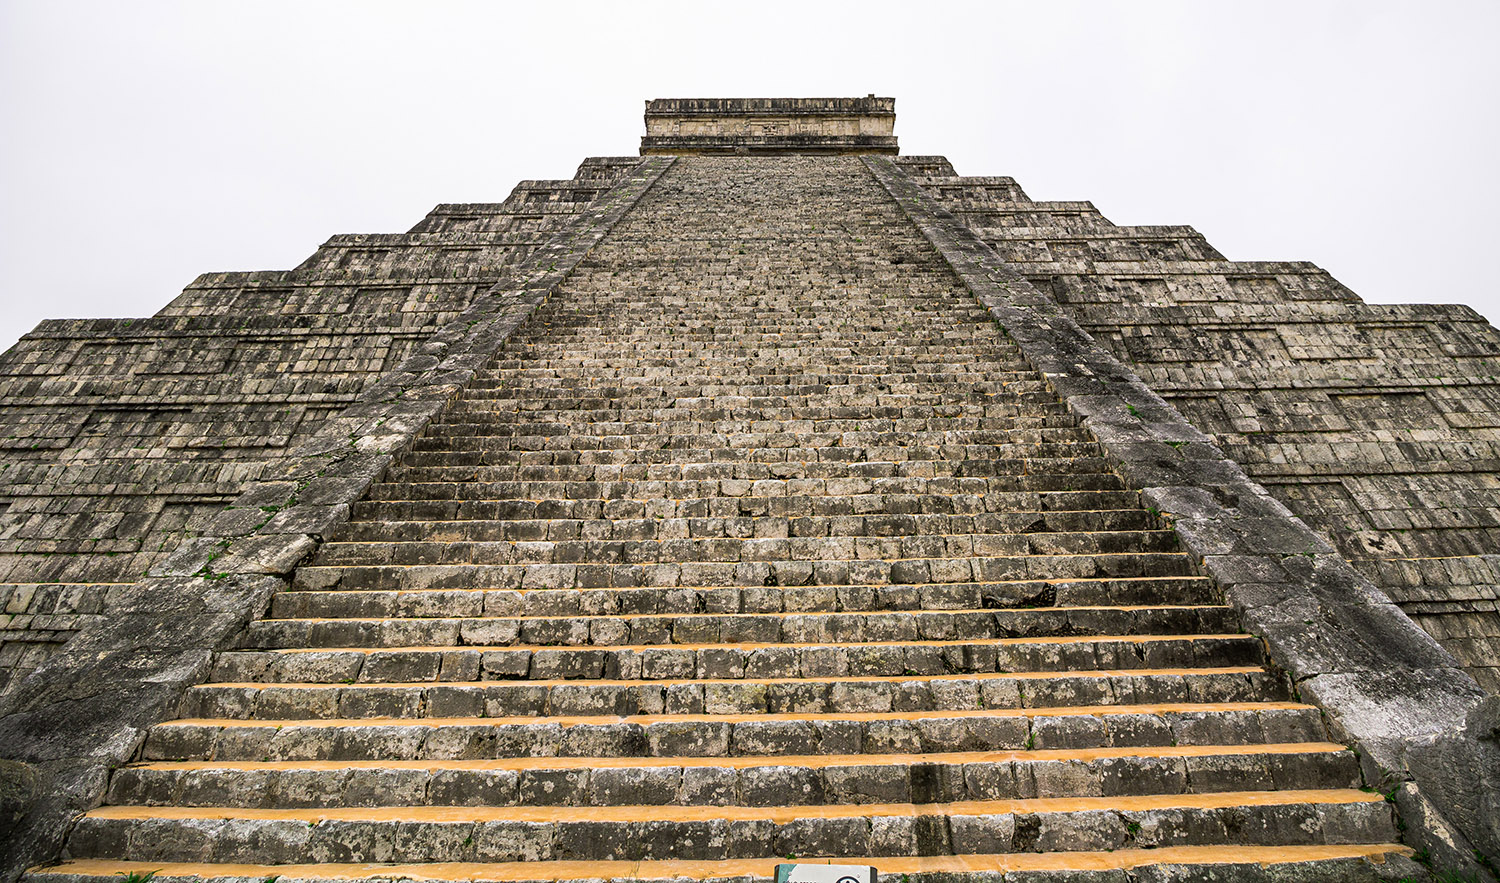 Pyramide des Kukulcan bei Chichen Itza